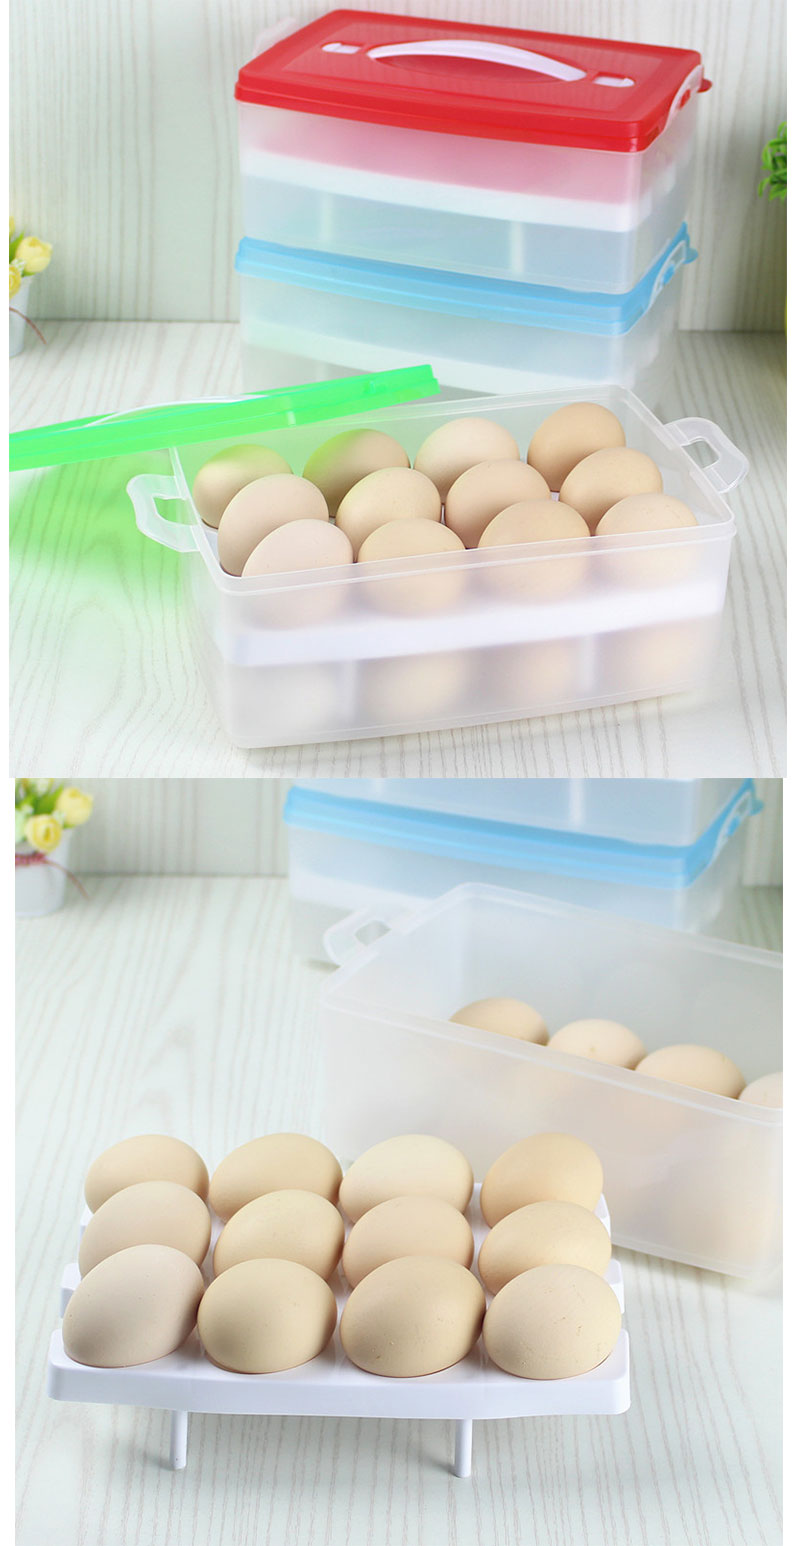 Portable Dozen Frozen Dumplings Food Egg Container Storage Box